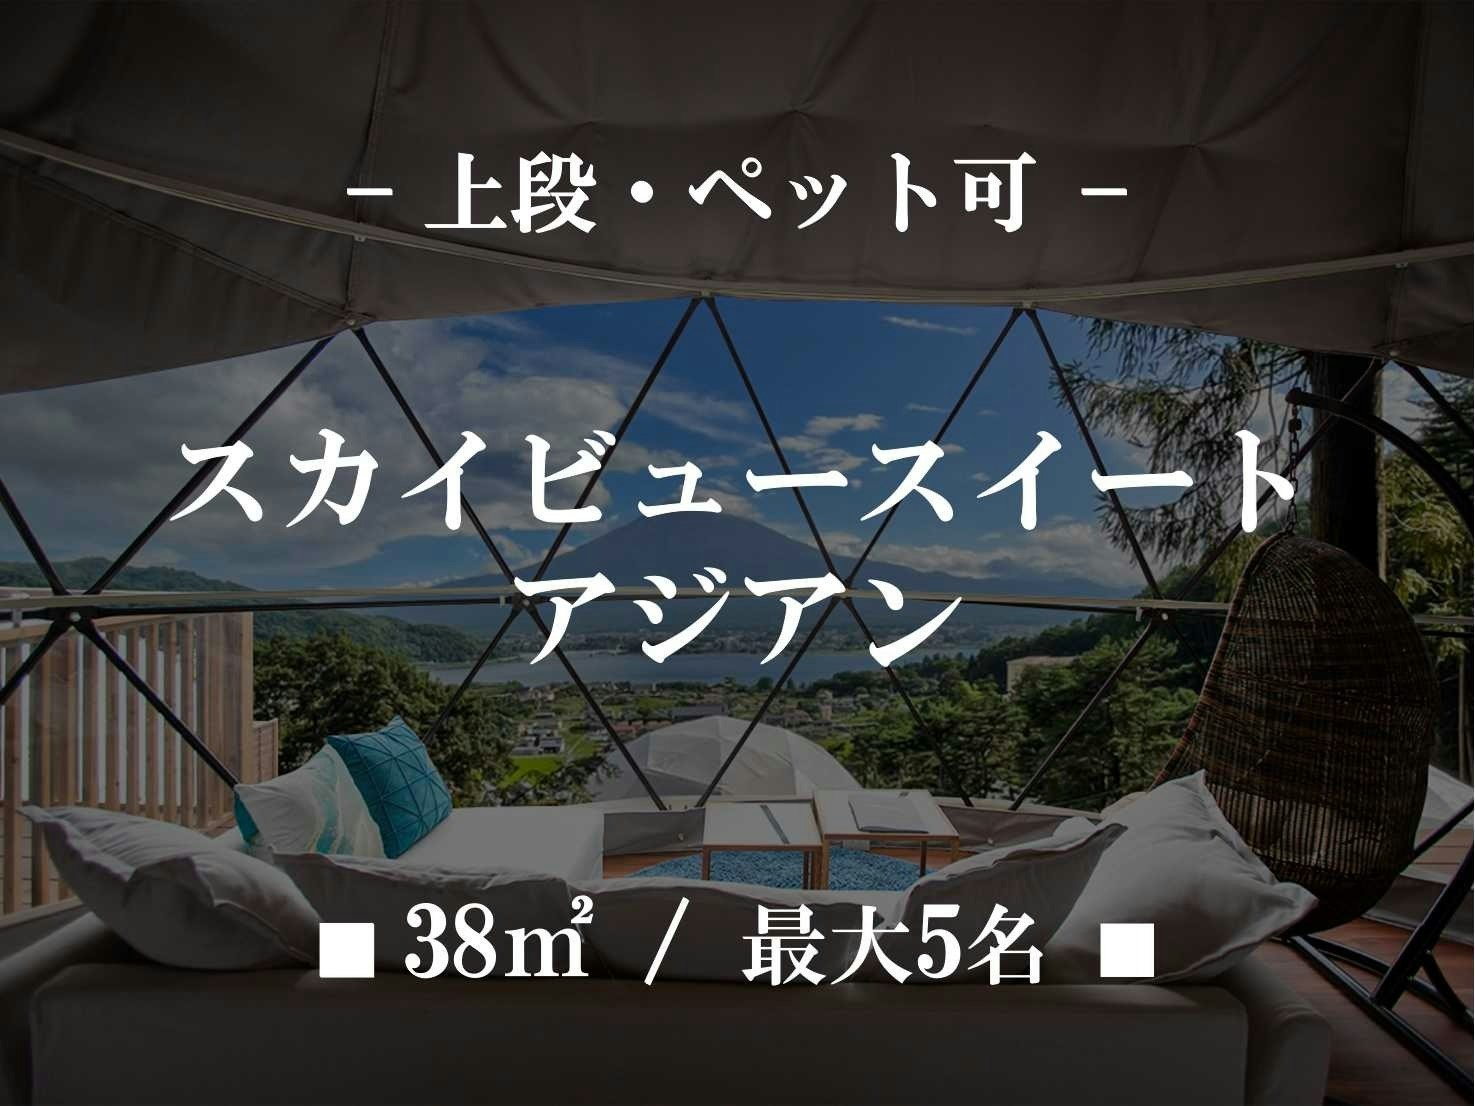 【貸切】スカイビュースイート アジアンリゾート ペット可上段 ■38m2/最大5名■